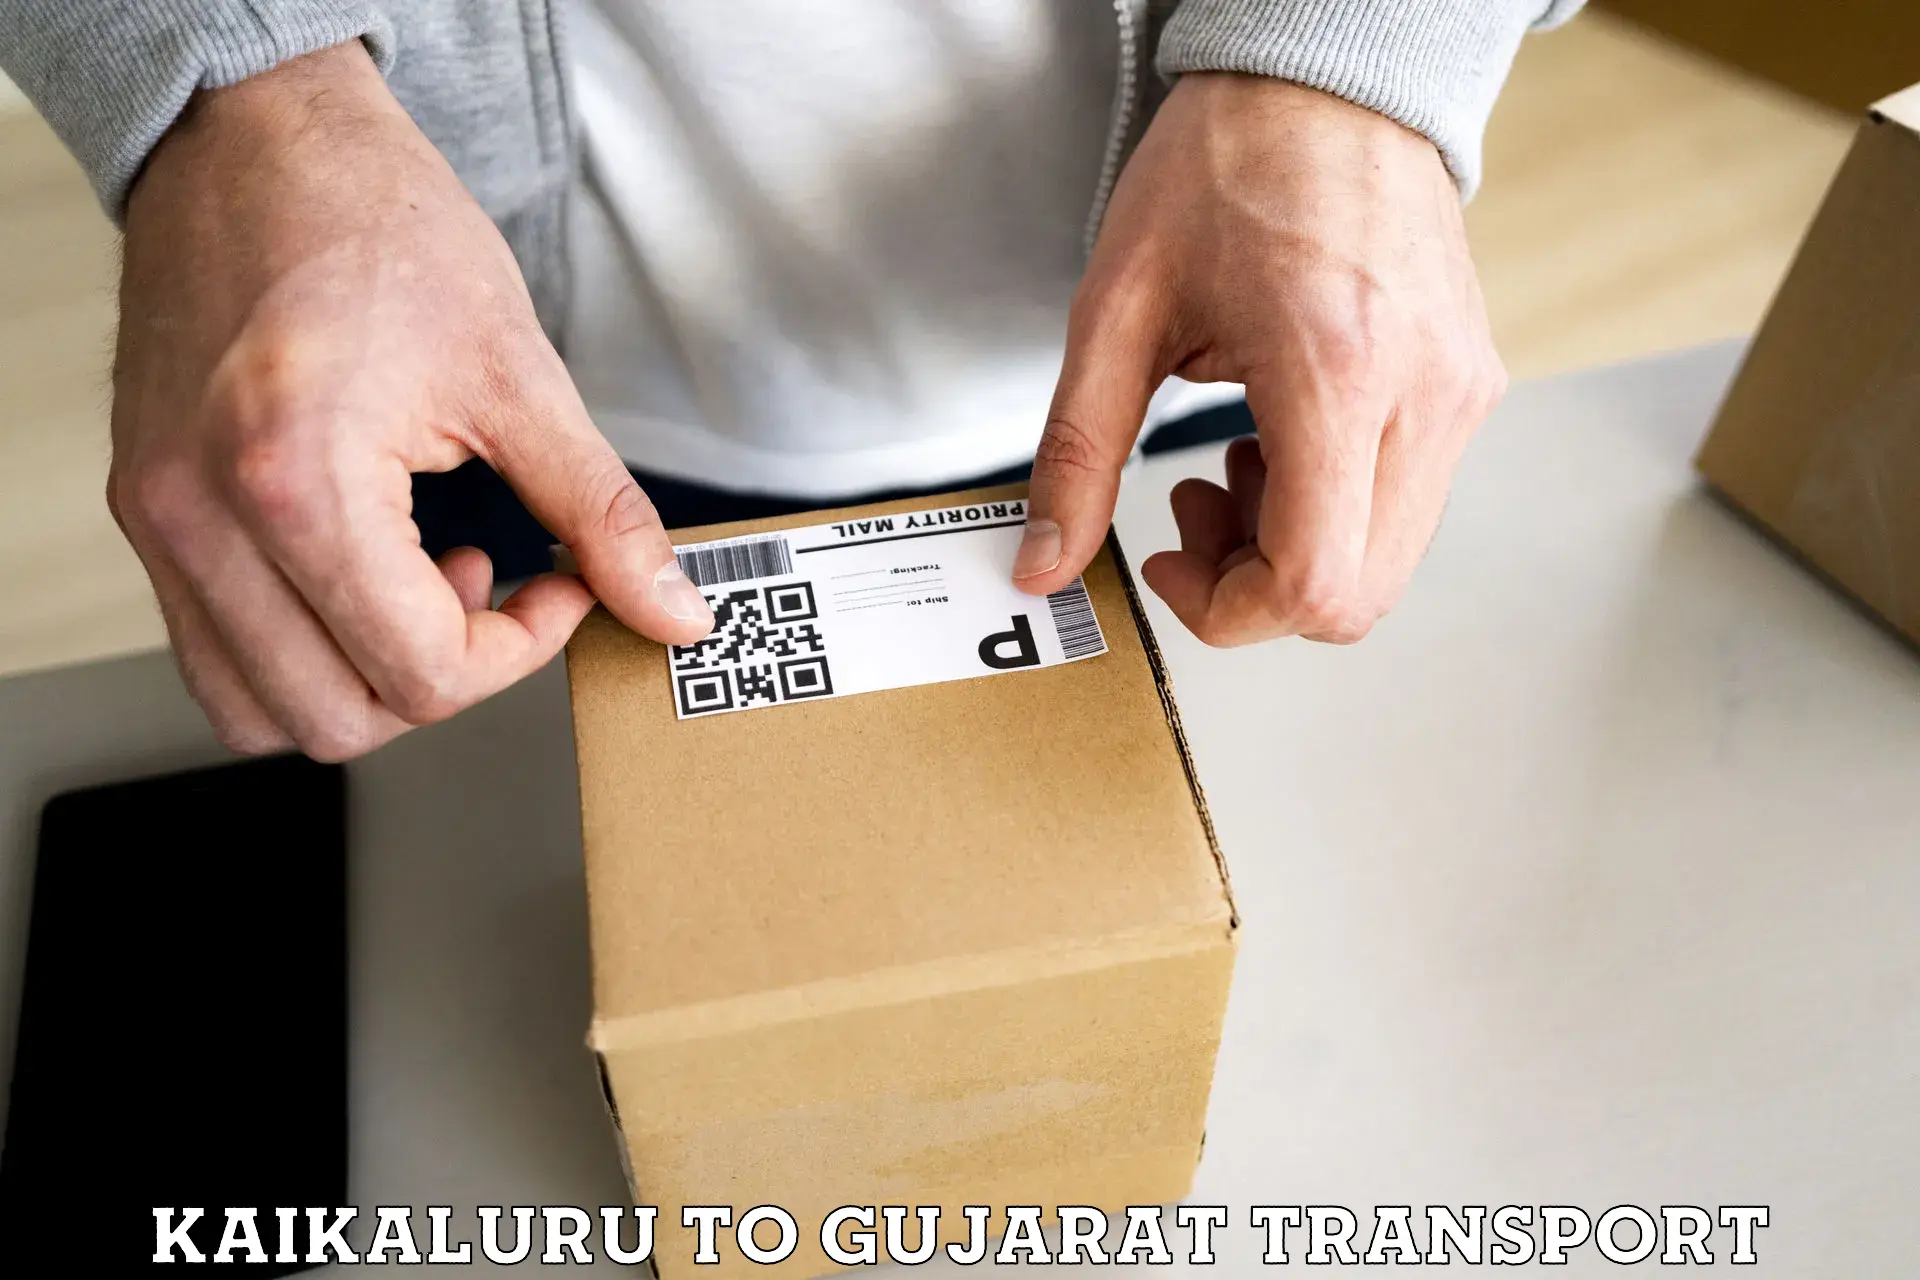 Nearest transport service Kaikaluru to Talala